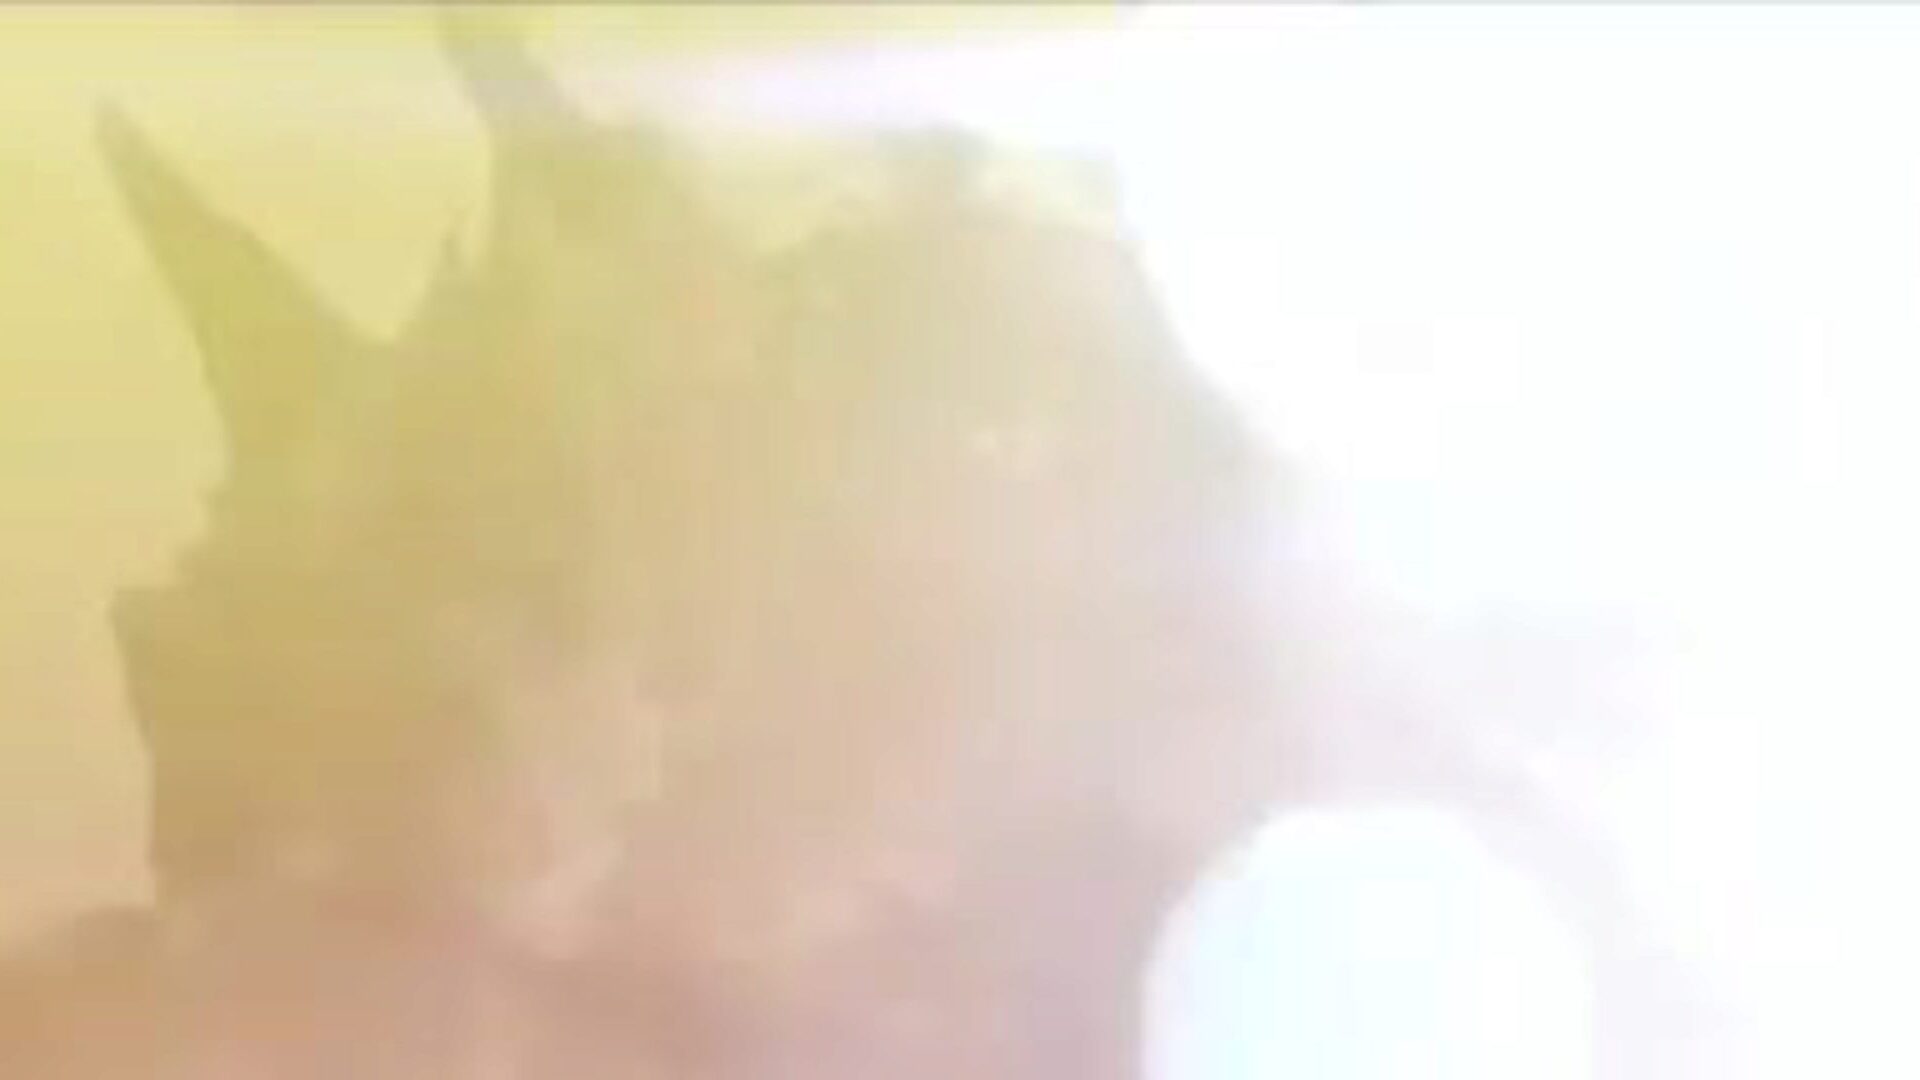 غارام هوا 2020: فيديو إباحي هندي مجاني 24 - Xhamster شاهد Garam Hwa 2020 Tube Hump Movie Scene مجانًا على xhamster ، مع المجموعة الأكثر جاذبية من مسلسلات الأفلام الإباحية الآسيوية الهندية والويب